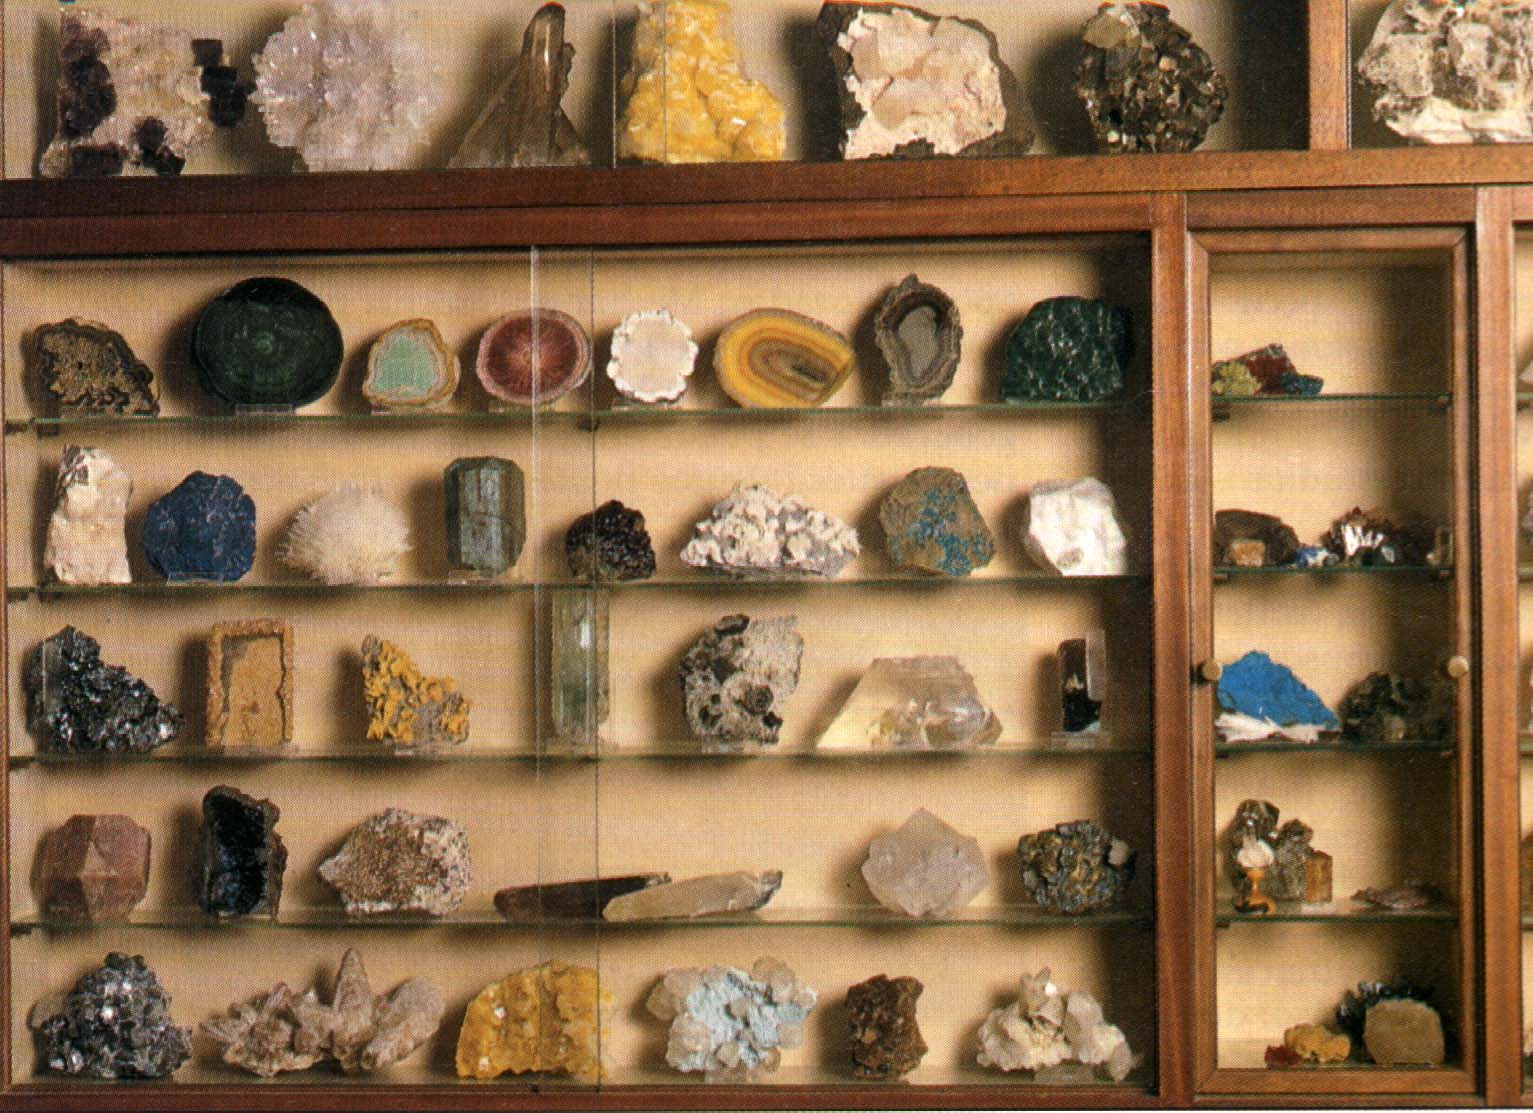 Dlya collection. Стеллаж для коллекции камней. Полочки для коллекции камней. Стеллаж для коллекционирования минералов. Коллекция минералов.